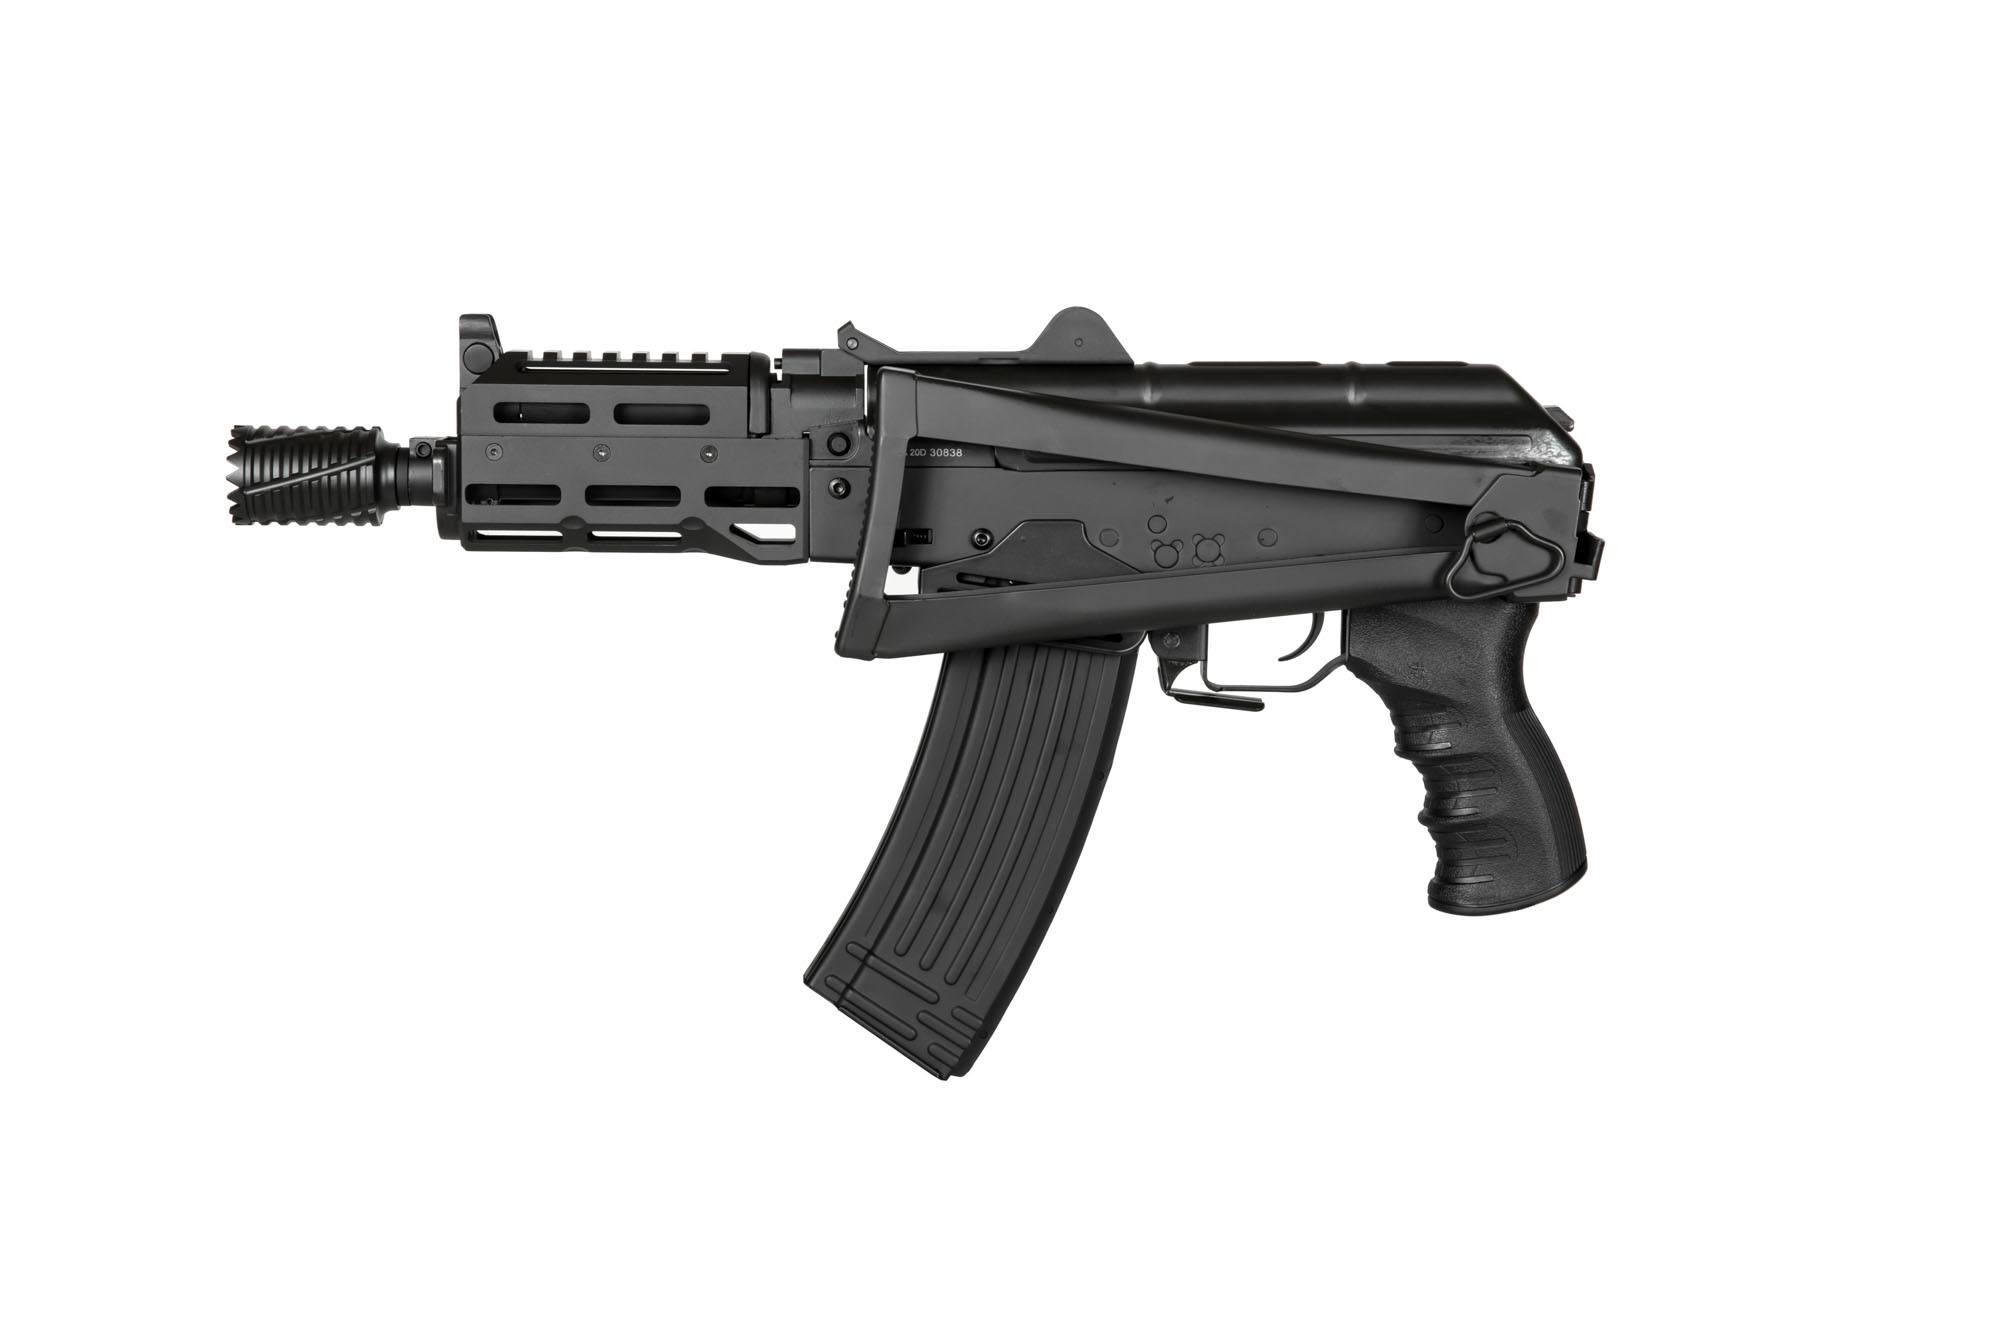 ASK211 EBB assault rifle